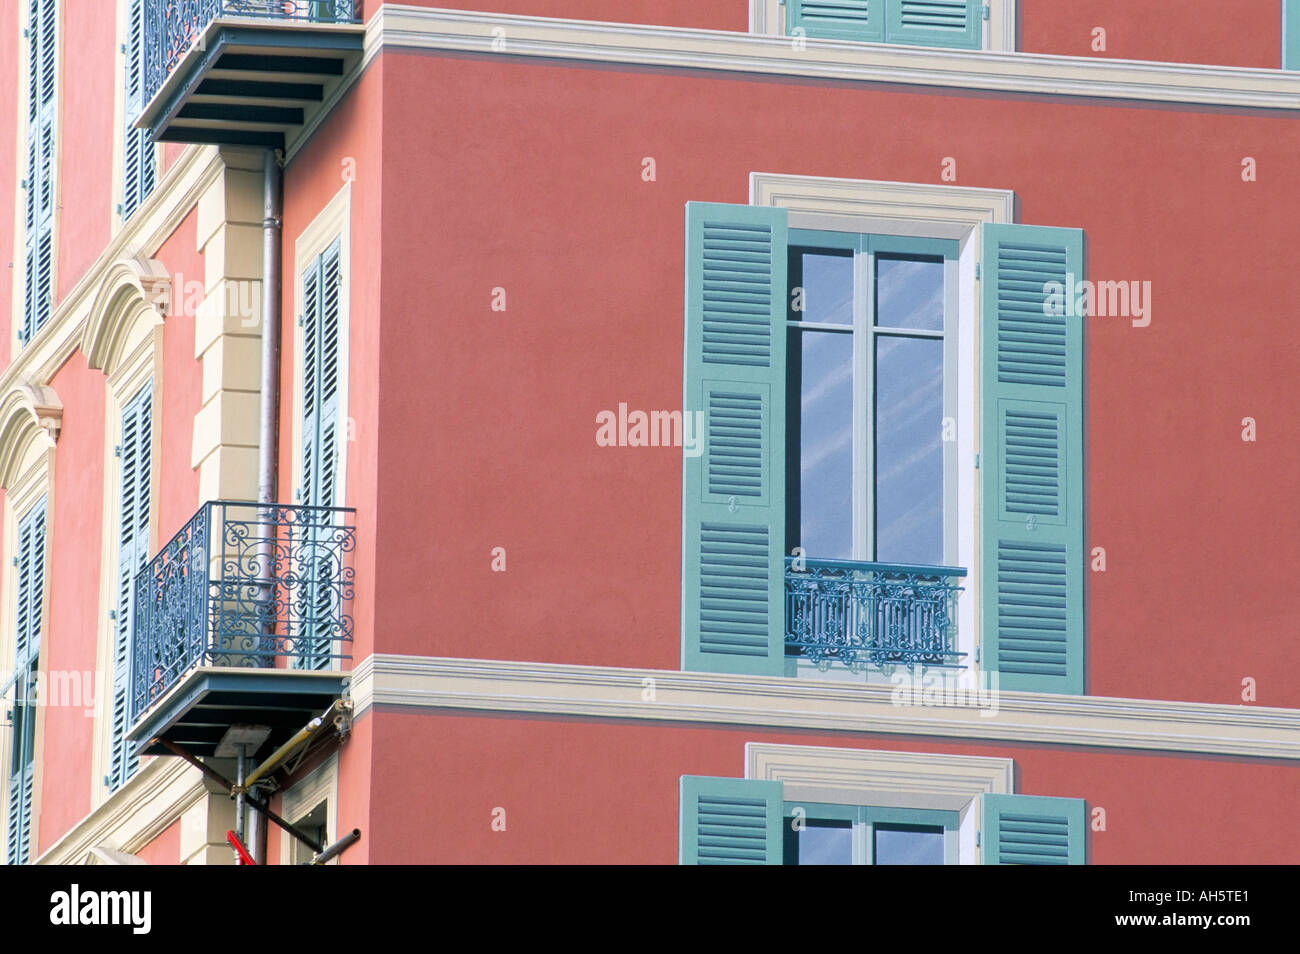 Maison rose avec des volets et des fenêtres en trompe-l oeil Menton Alpes Maritimes Cote d Azur Provence Côte d'Azur France Europe Banque D'Images